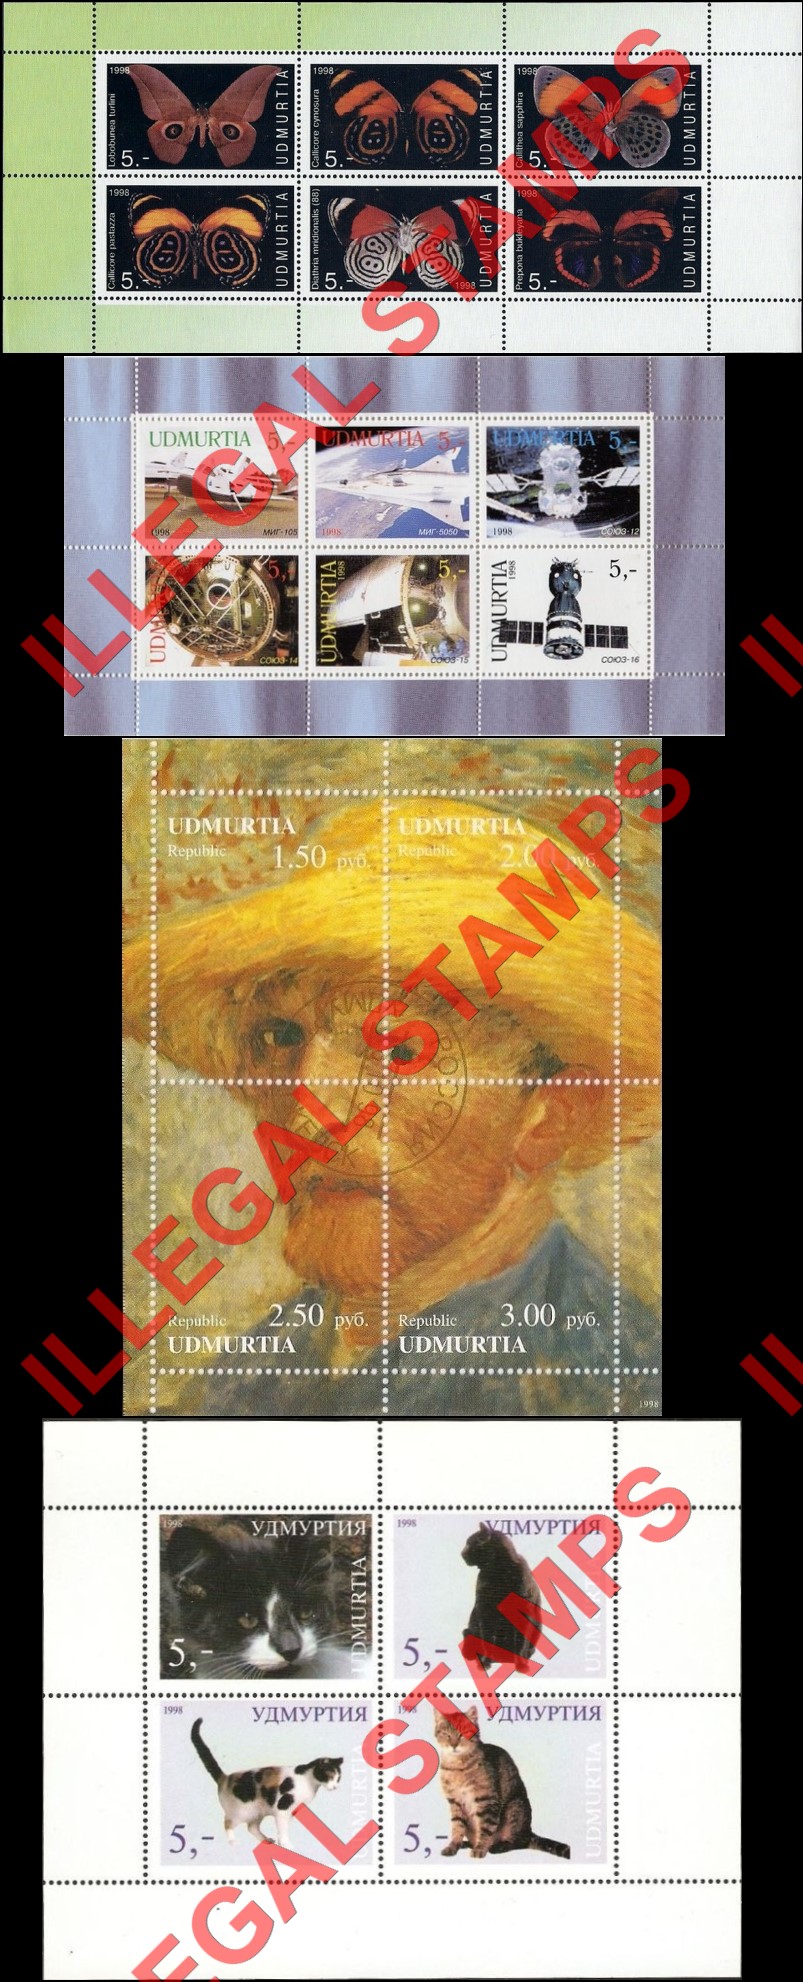 Republic of Udmurtia 1998 Counterfeit Illegal Stamps (Part 1)